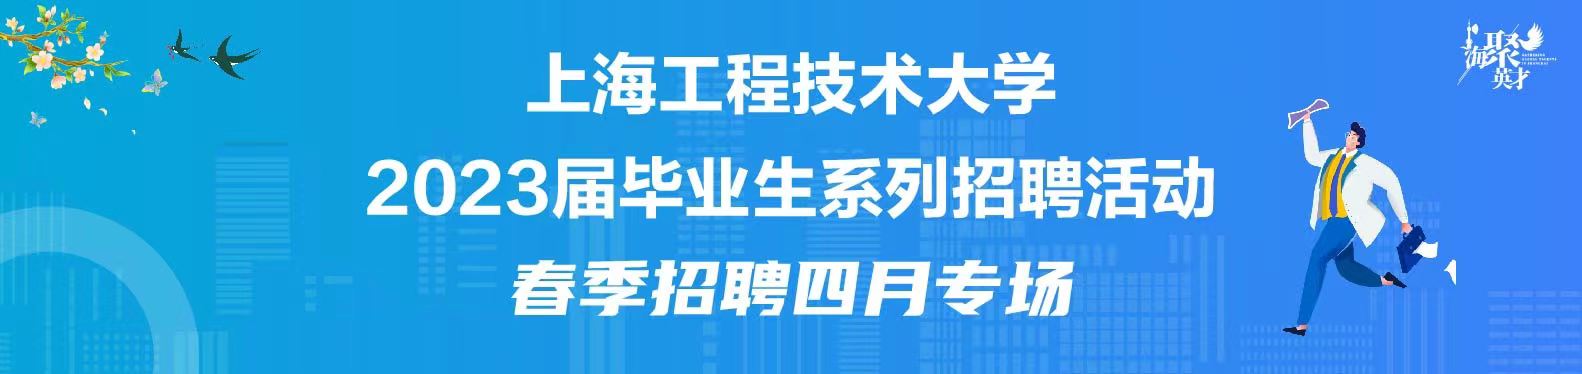 【线上双选会】 上海工程技术大学2023届毕业生4月专场系列招聘活动